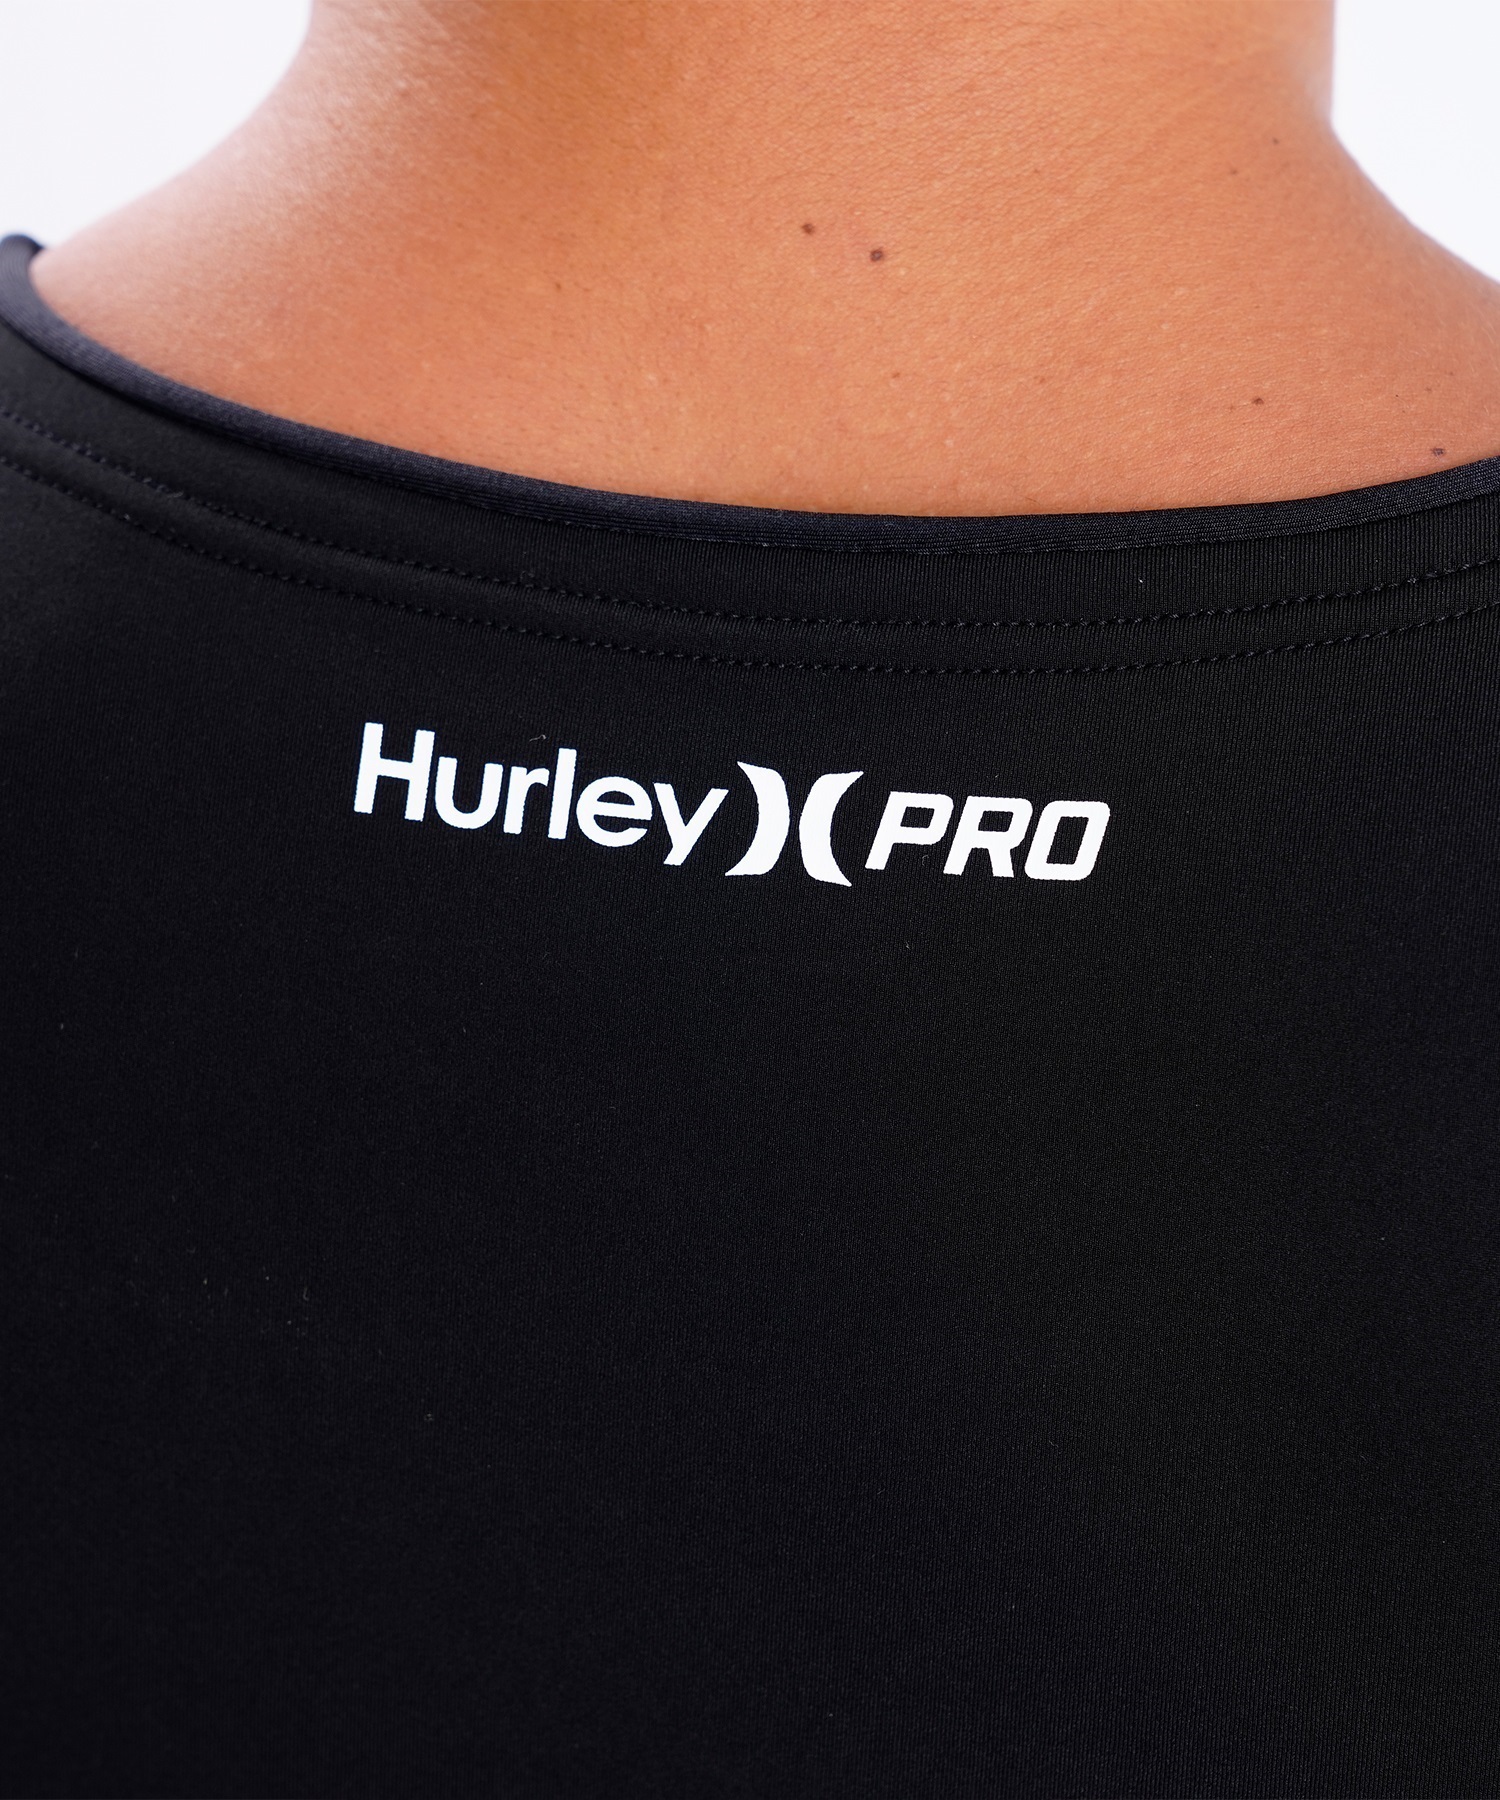 Hurley ハーレー HYPERW COMPRESSION メンズ MHPCSJ23 ウェットスーツ インナーショートジョン ムラサキスポーツ(BLK-S)